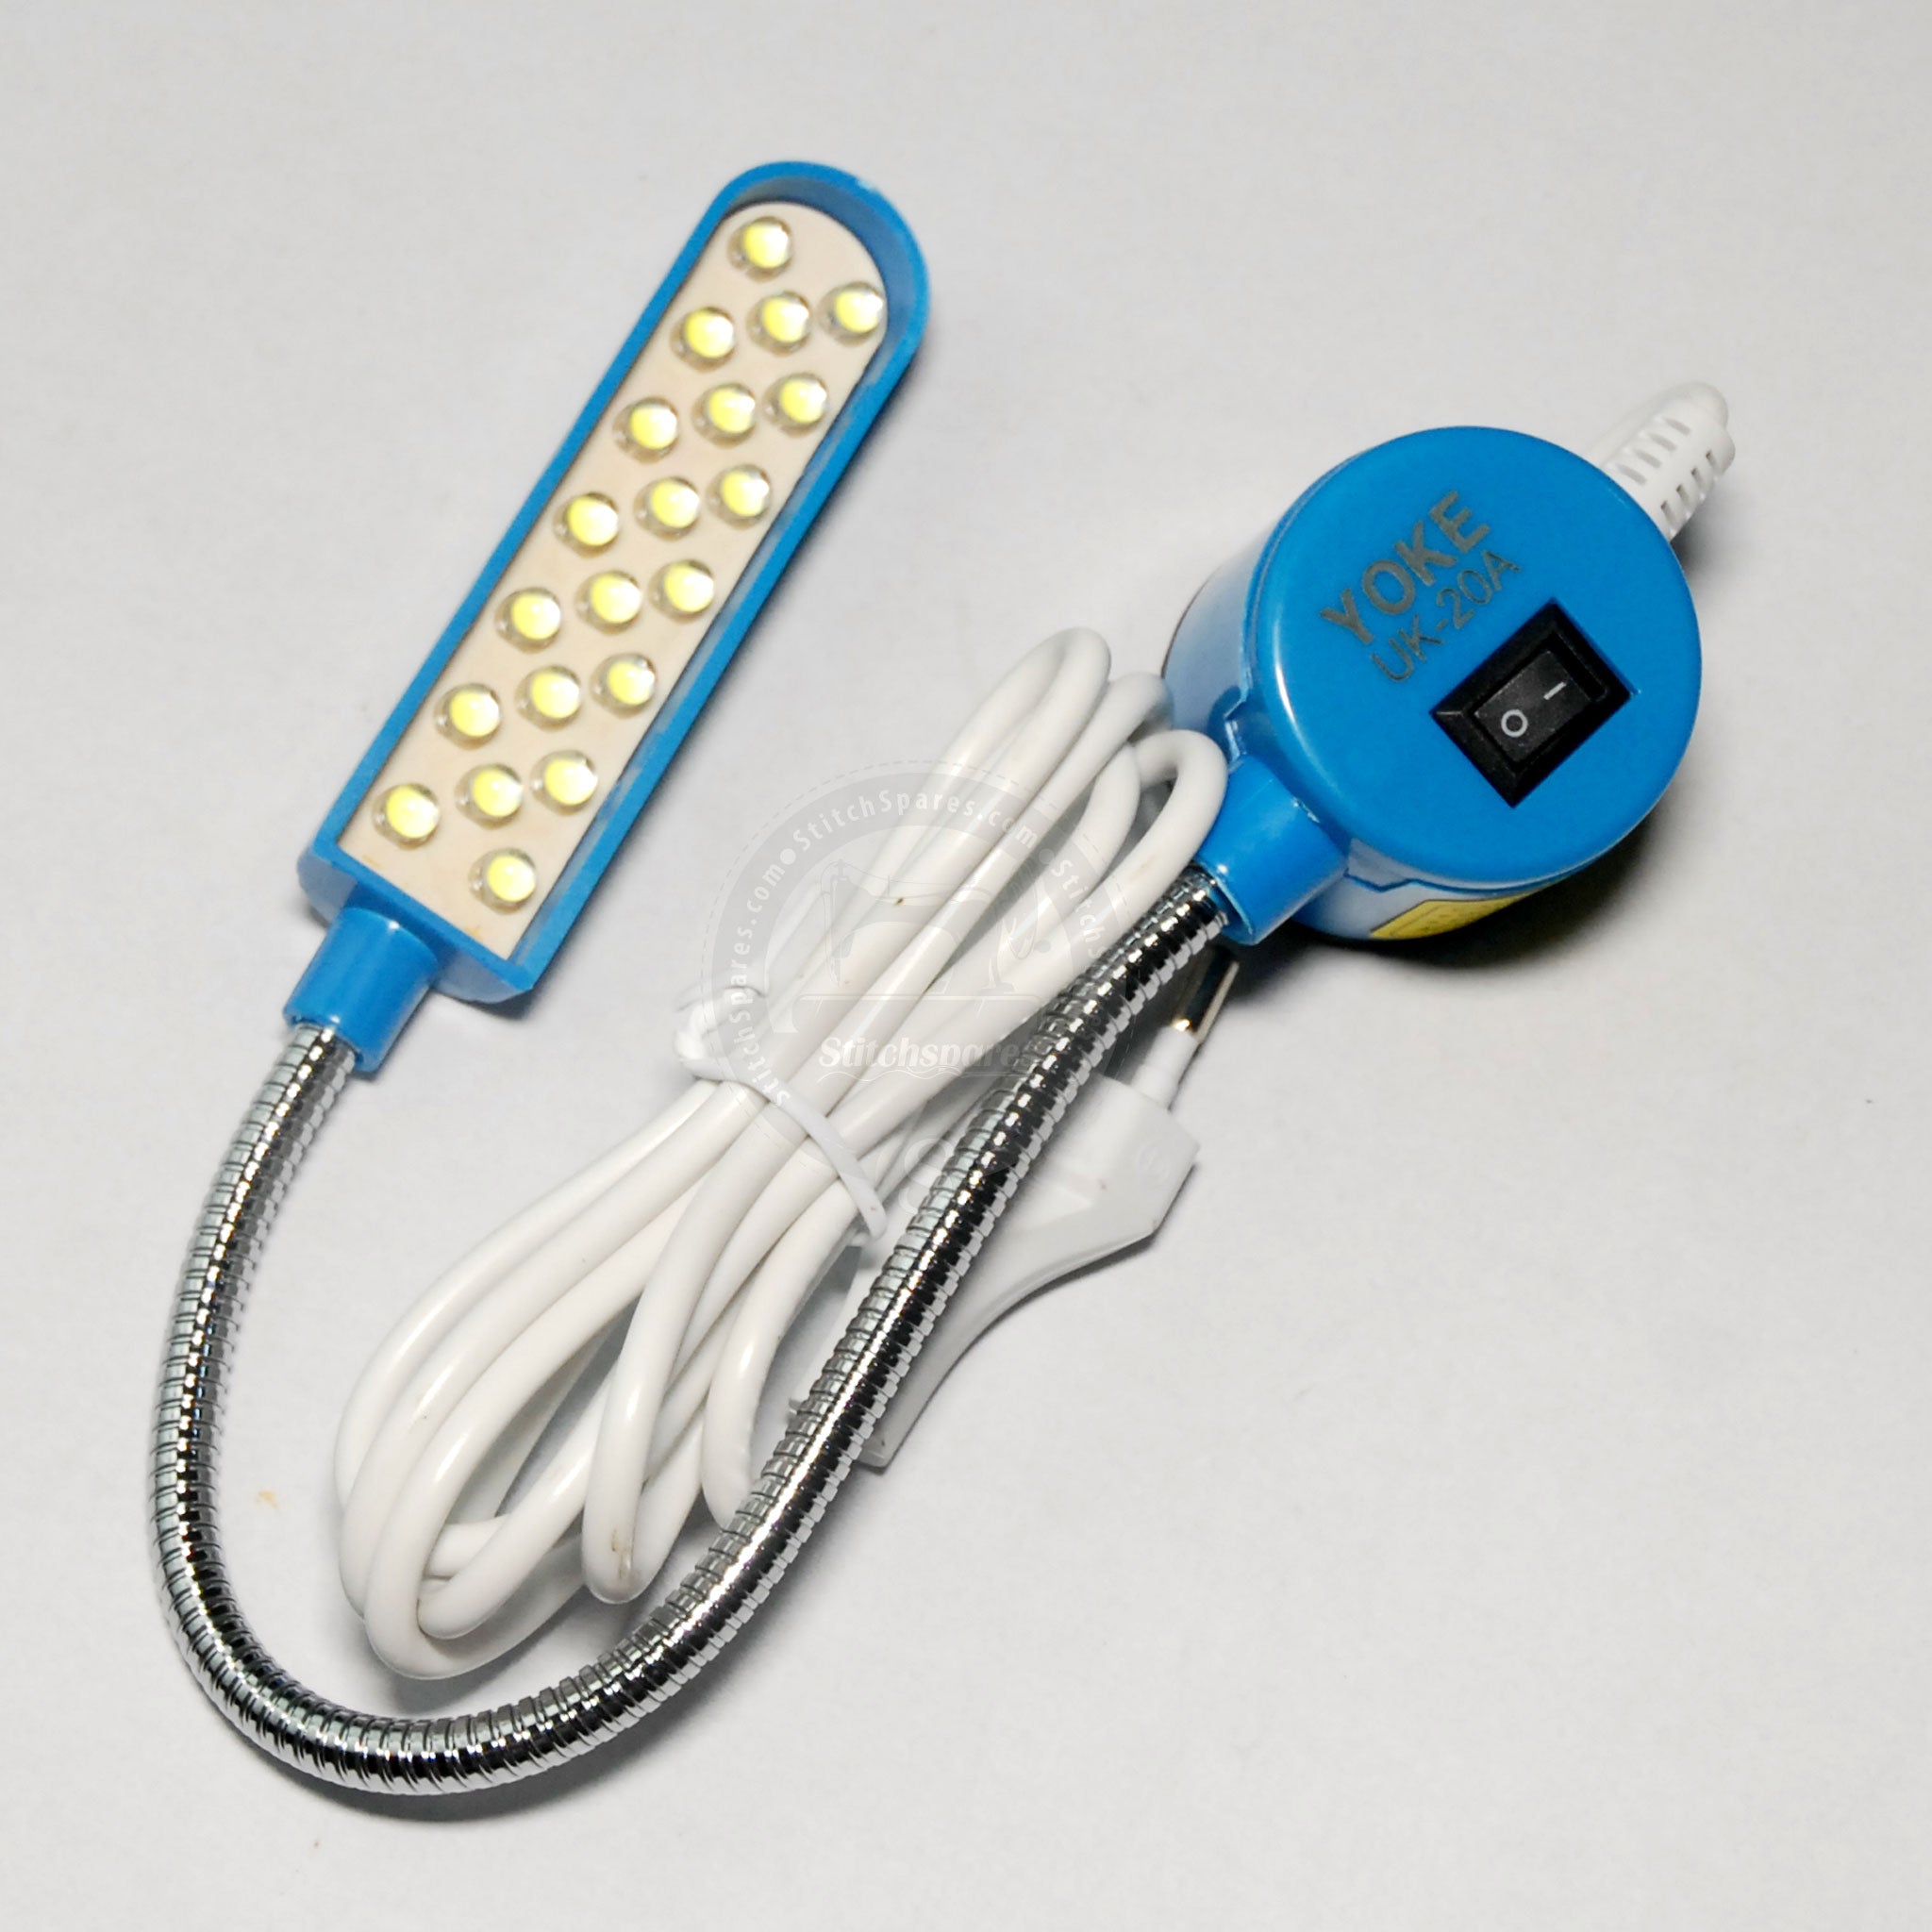 जुकी ब्रदर जैक पेग्सस सिरुबा सनस्टार कंसाई के लिए औद्योगिक सिलाई मशीन लेने के लिए एलईडी एडजस्टेबल लाइट